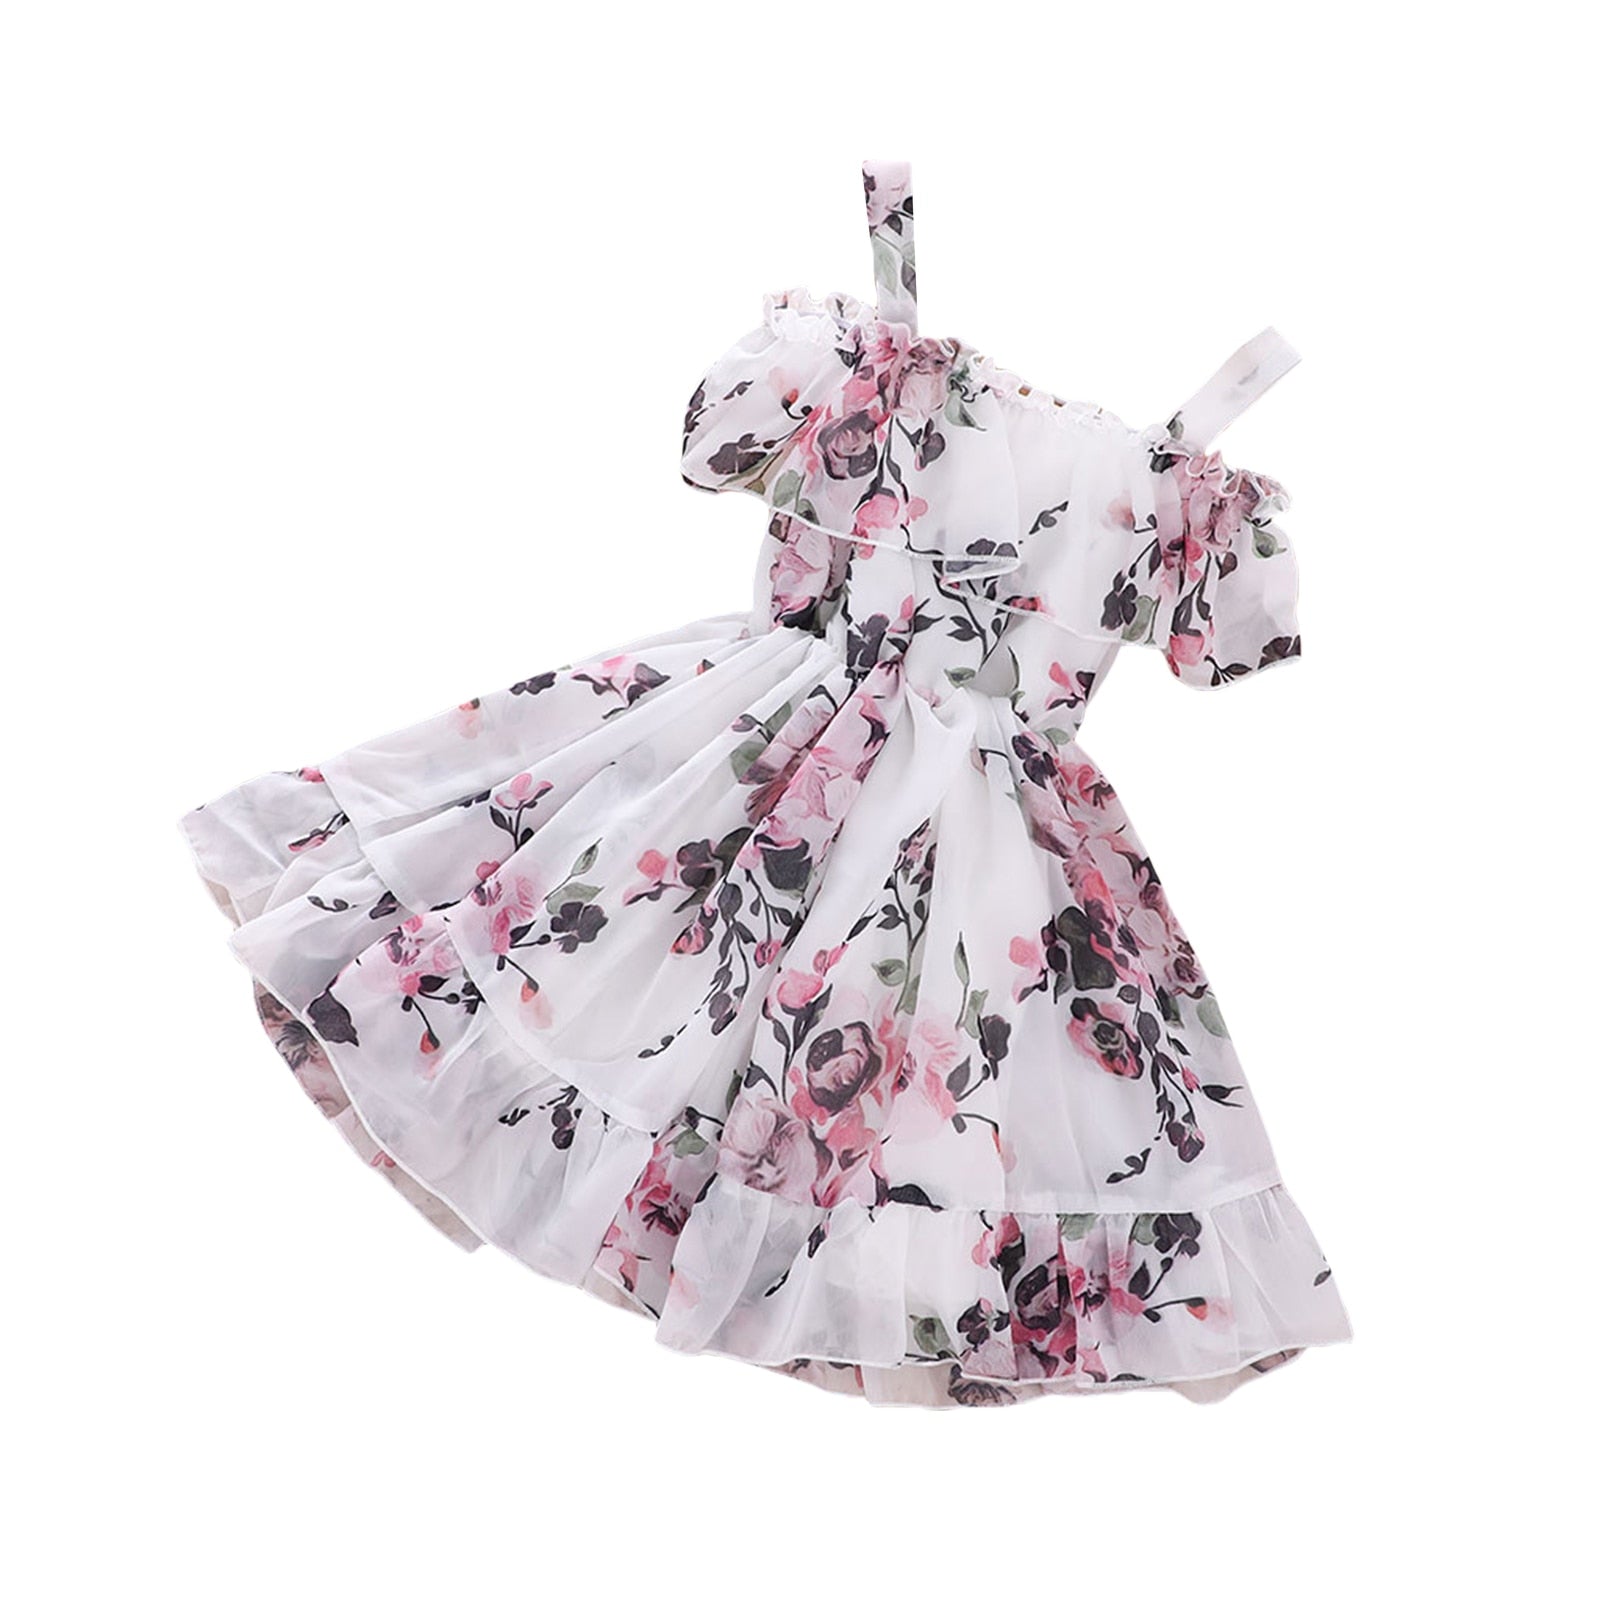 Vestido Infantil Florido vestido Loja Click Certo Branco 18-24 meses 52cm 